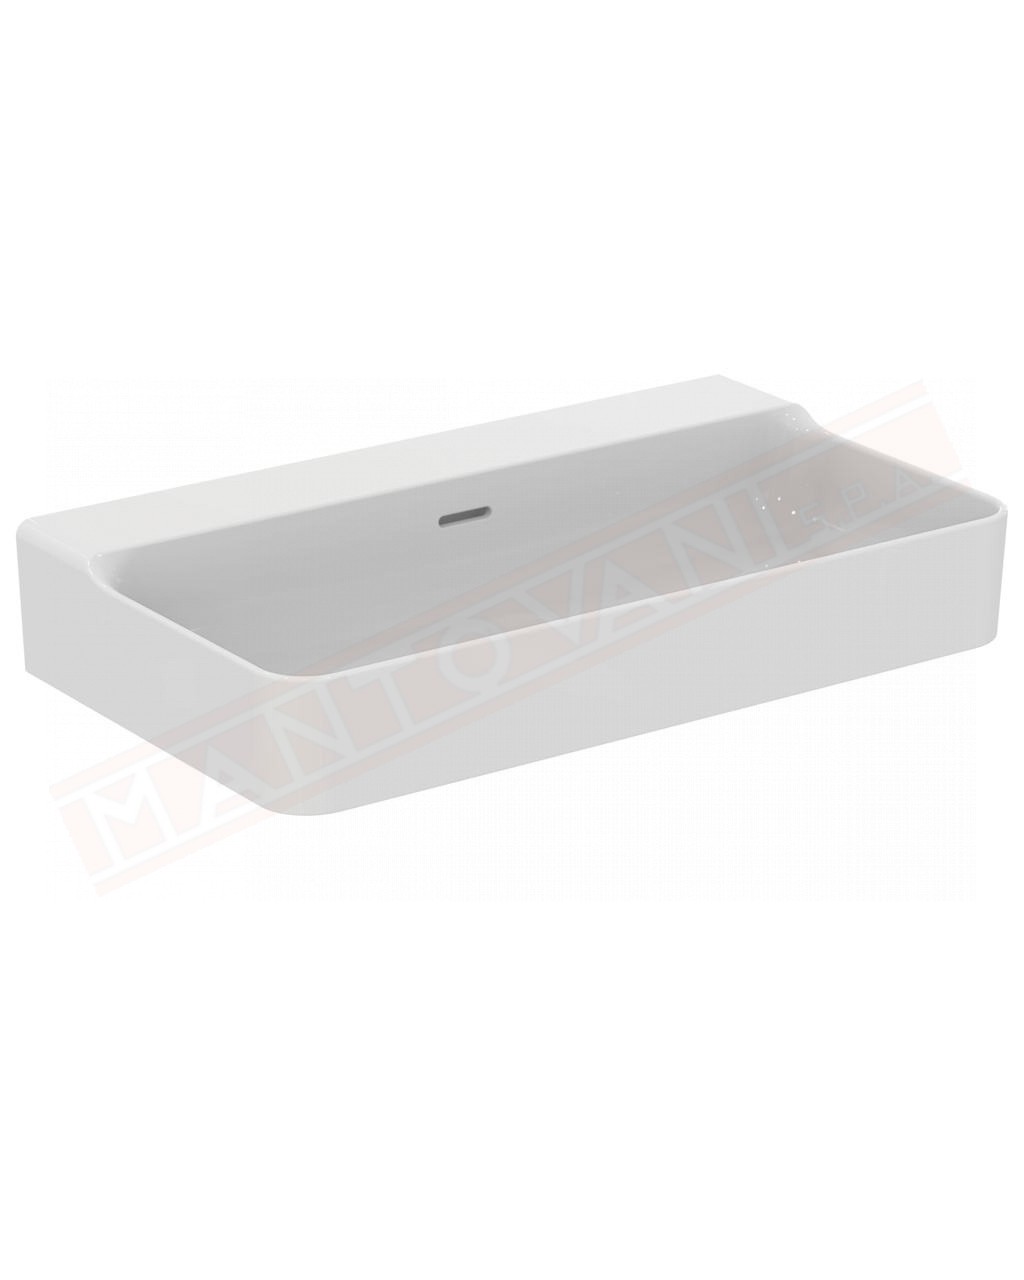 Ideal Standard Conca lavabo bagno da parete 80x45 cm con troppopieno e senza fori rubinetto lato inferiore smaltato